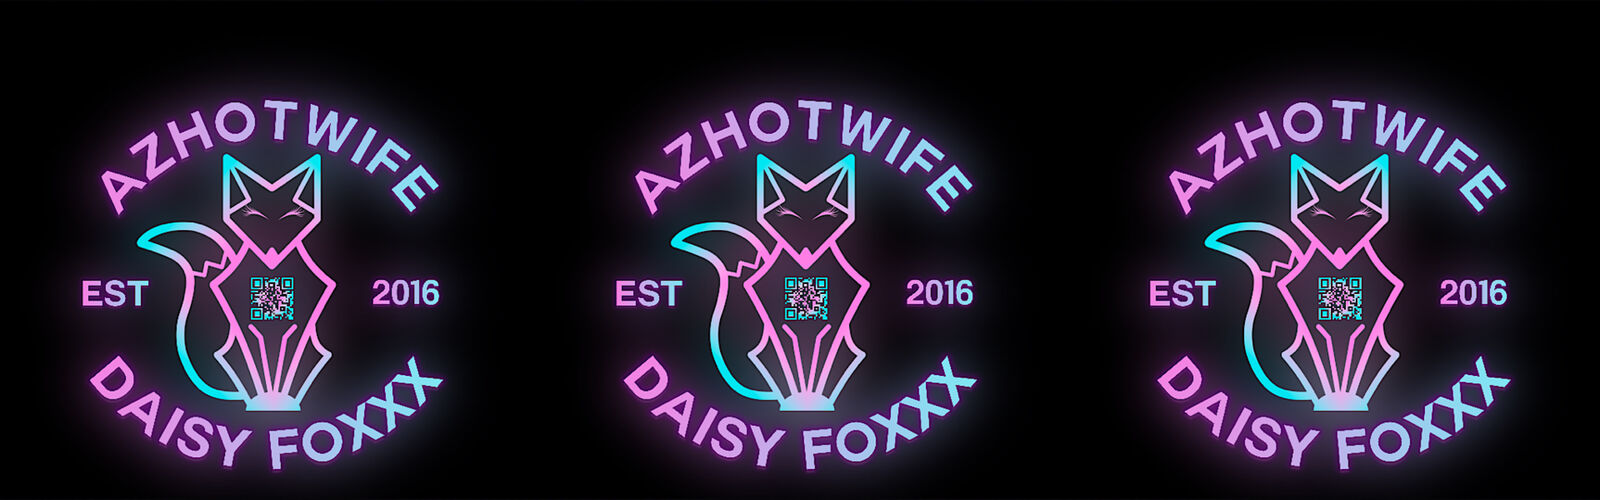 azhotwife.daisy.foxxx